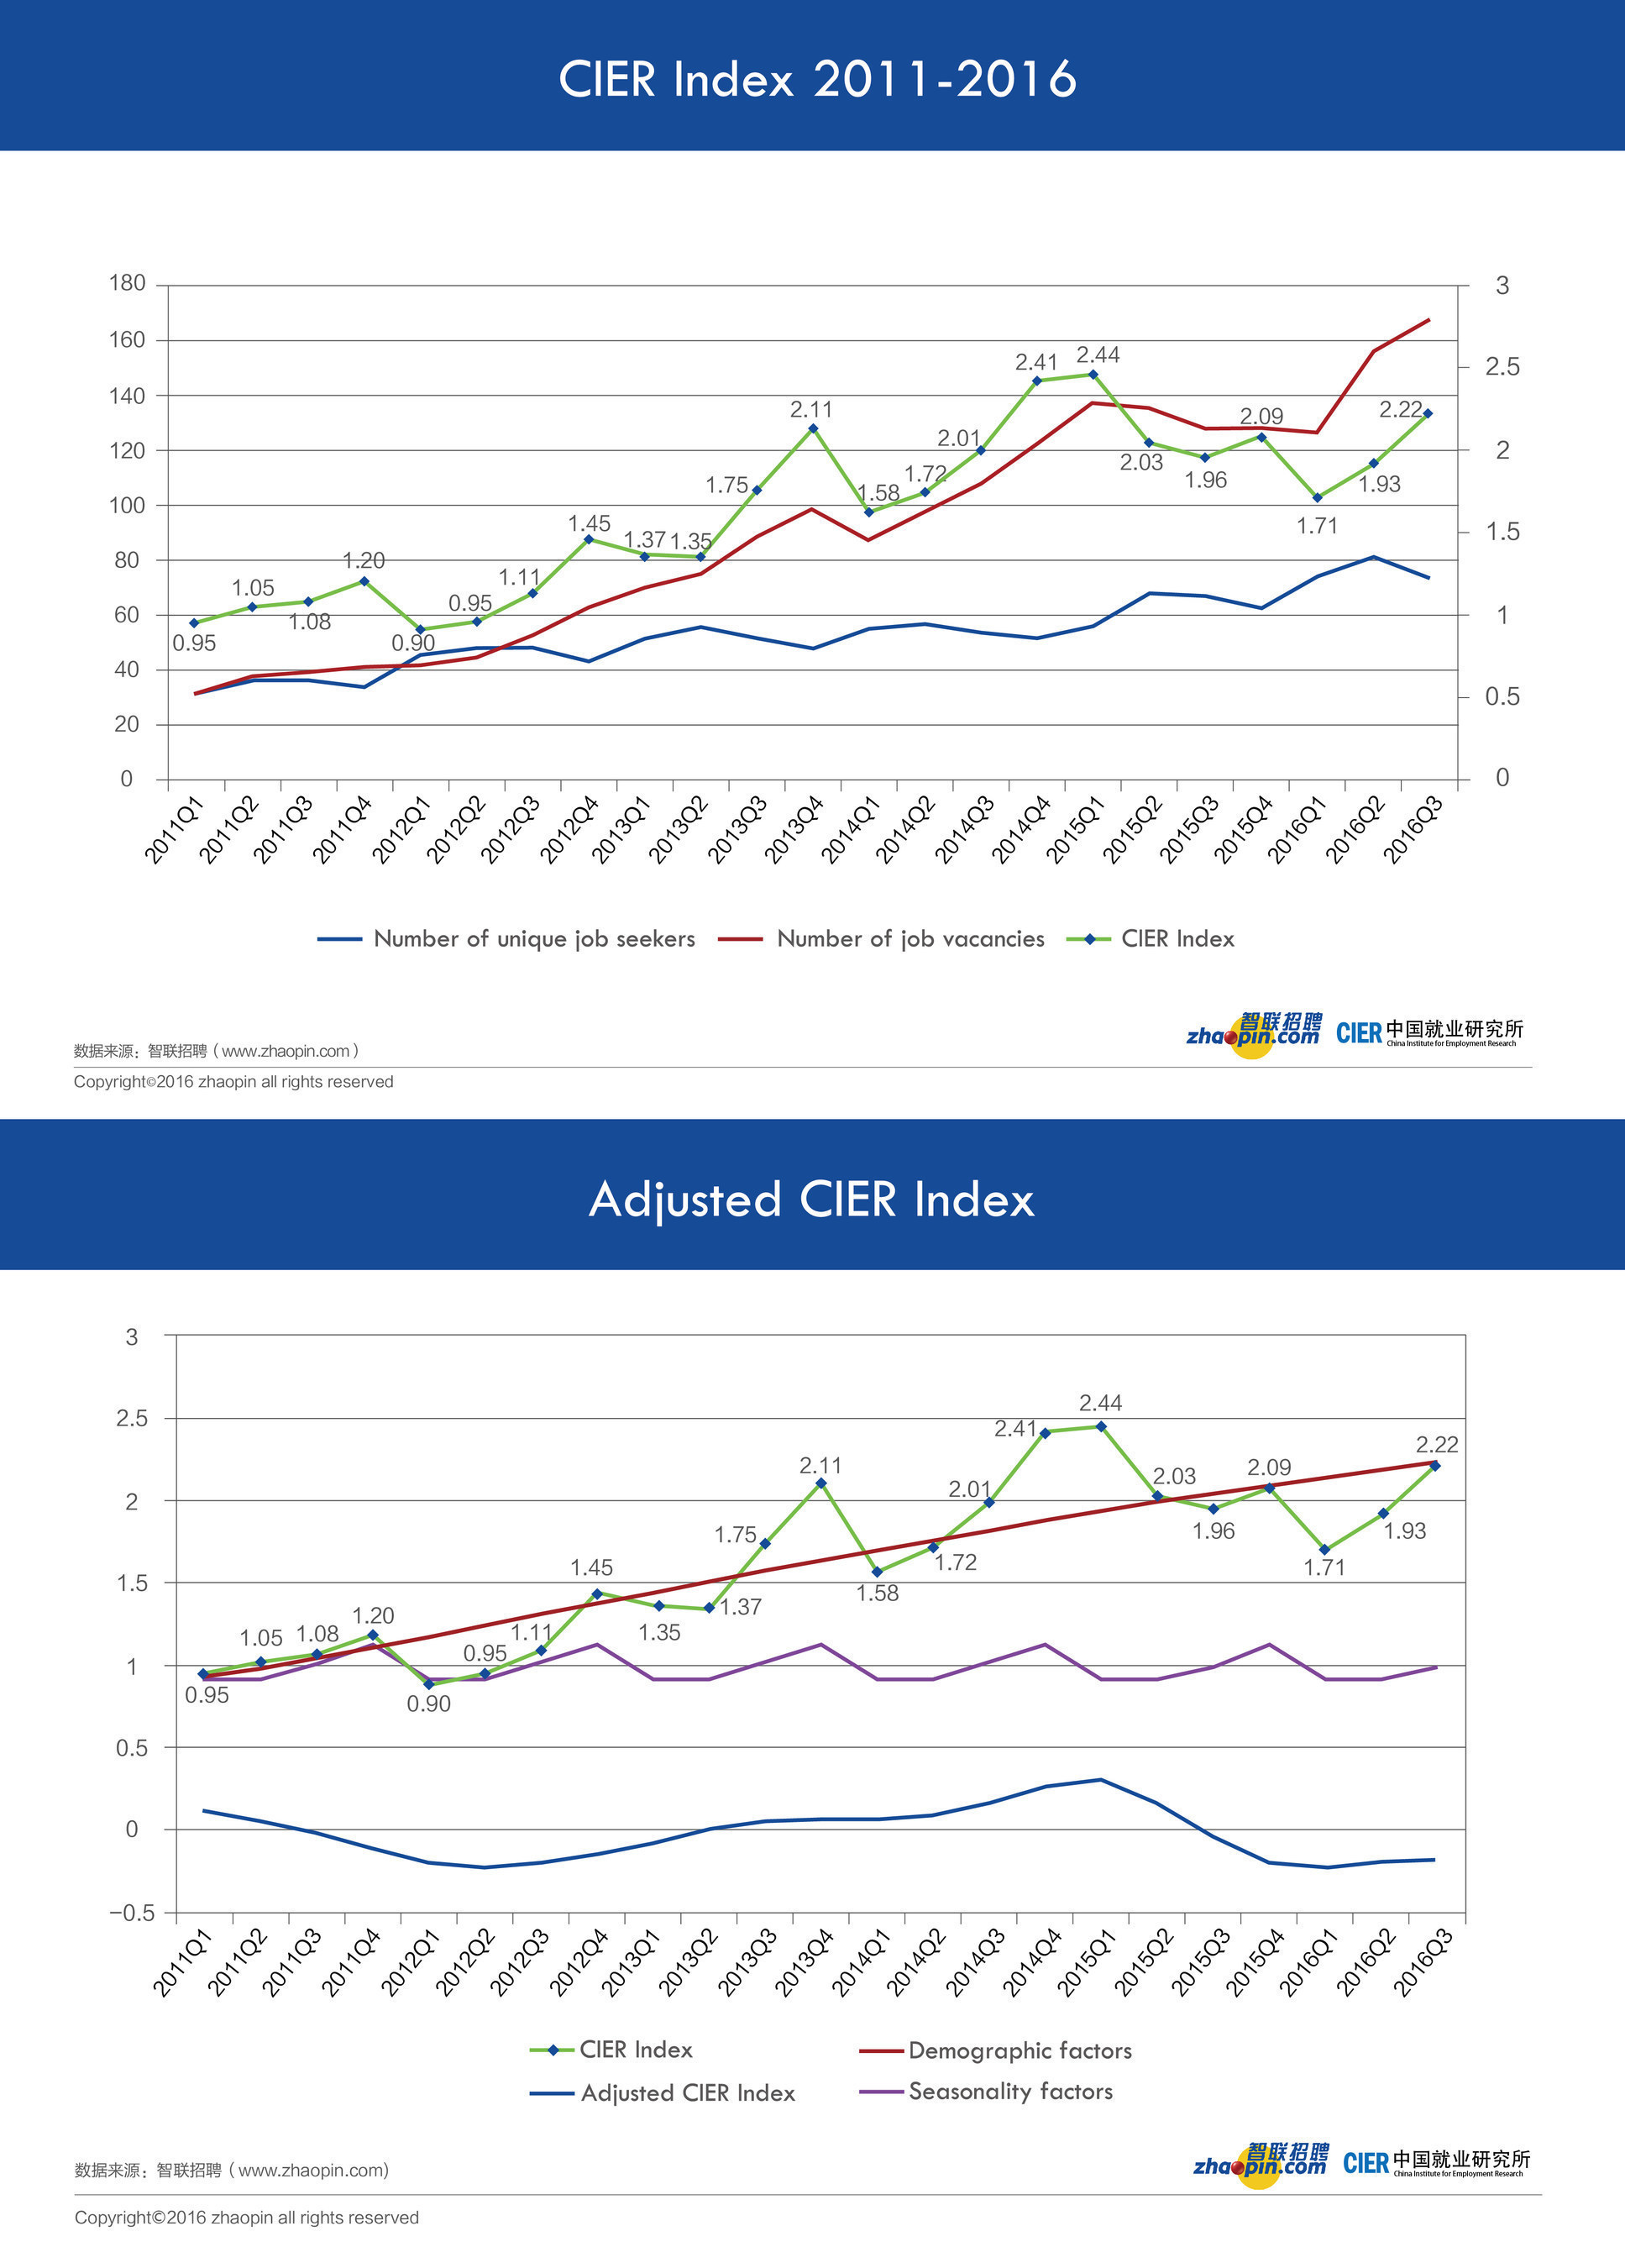 CIER Index 2011-2016 and Adjusted CIER Index